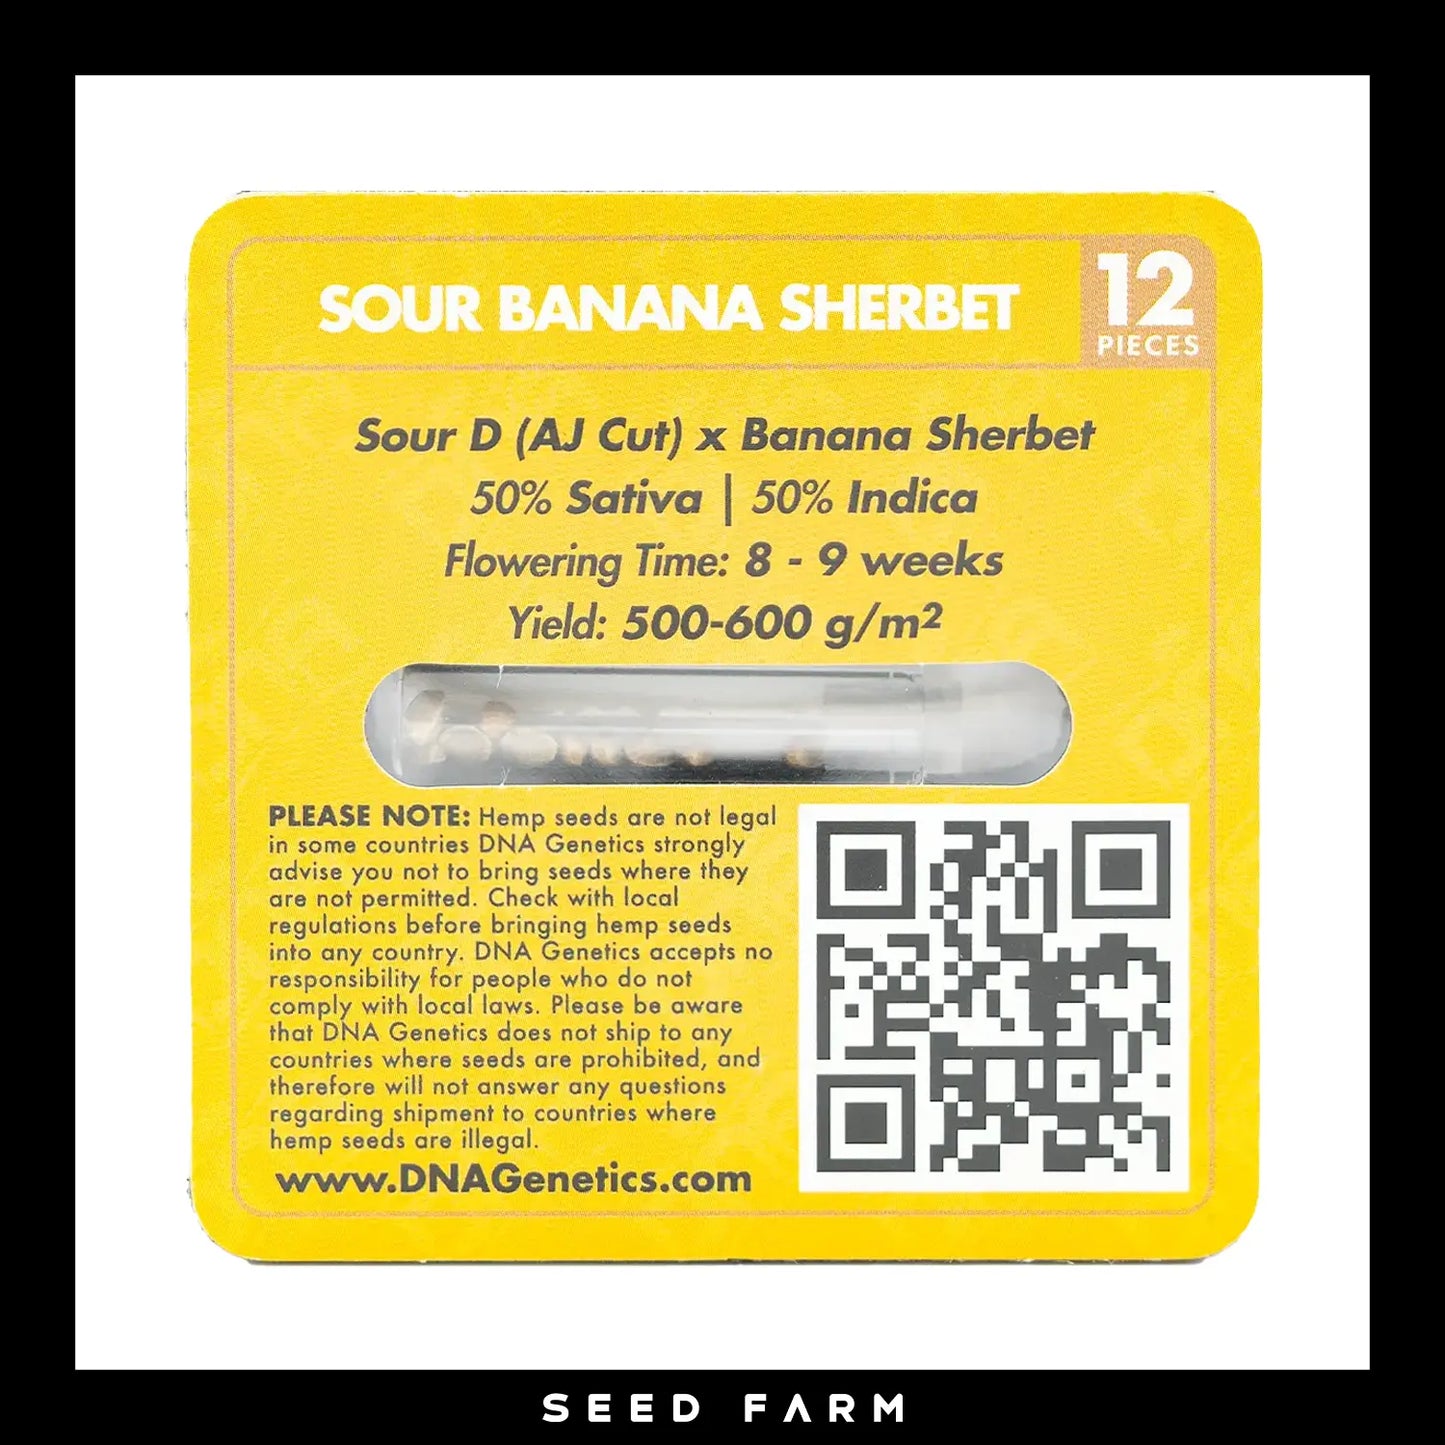 DNA Genetics Sour Banana Sherbet, Crockett Family Farm, regular Cannabis Samen, 12 Stück, Rückansicht